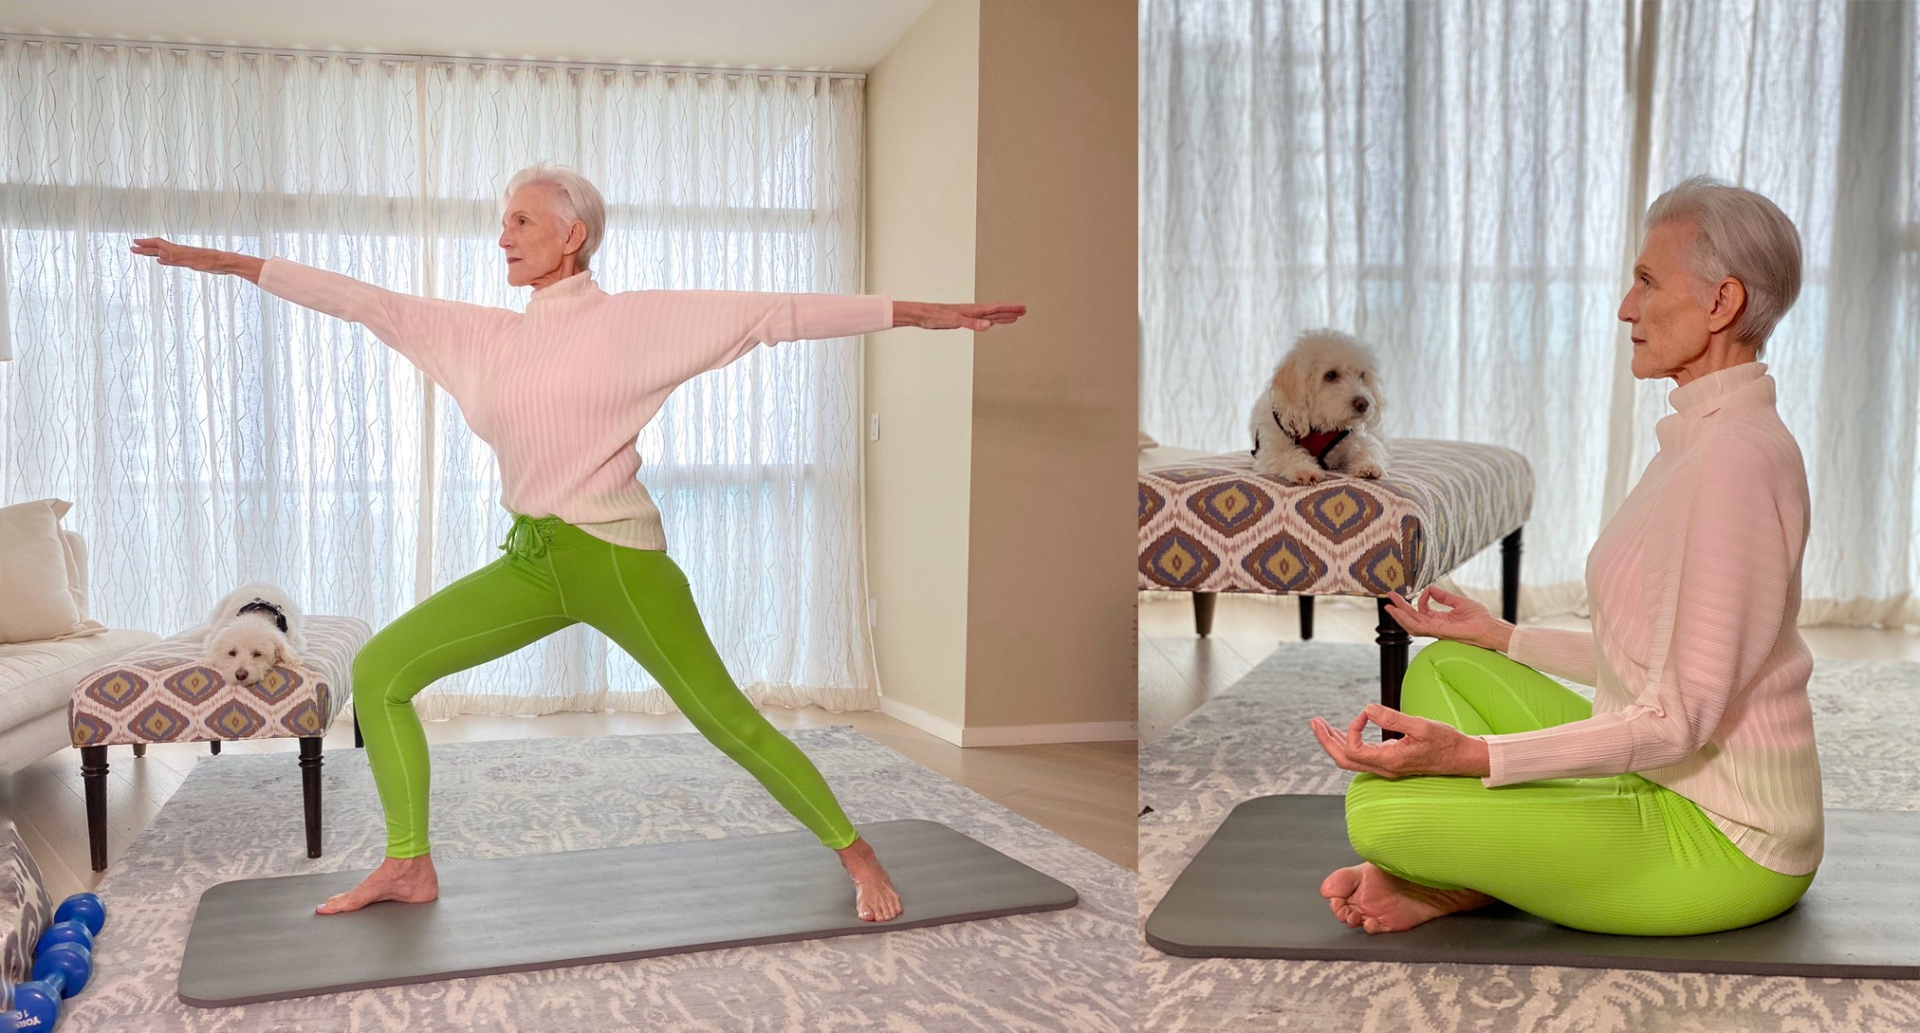 Maye Musk luyện tập yoga và ngồi thiền mỗi ngày để duy trì vóc dáng thanh mảnh và sức khoẻ.